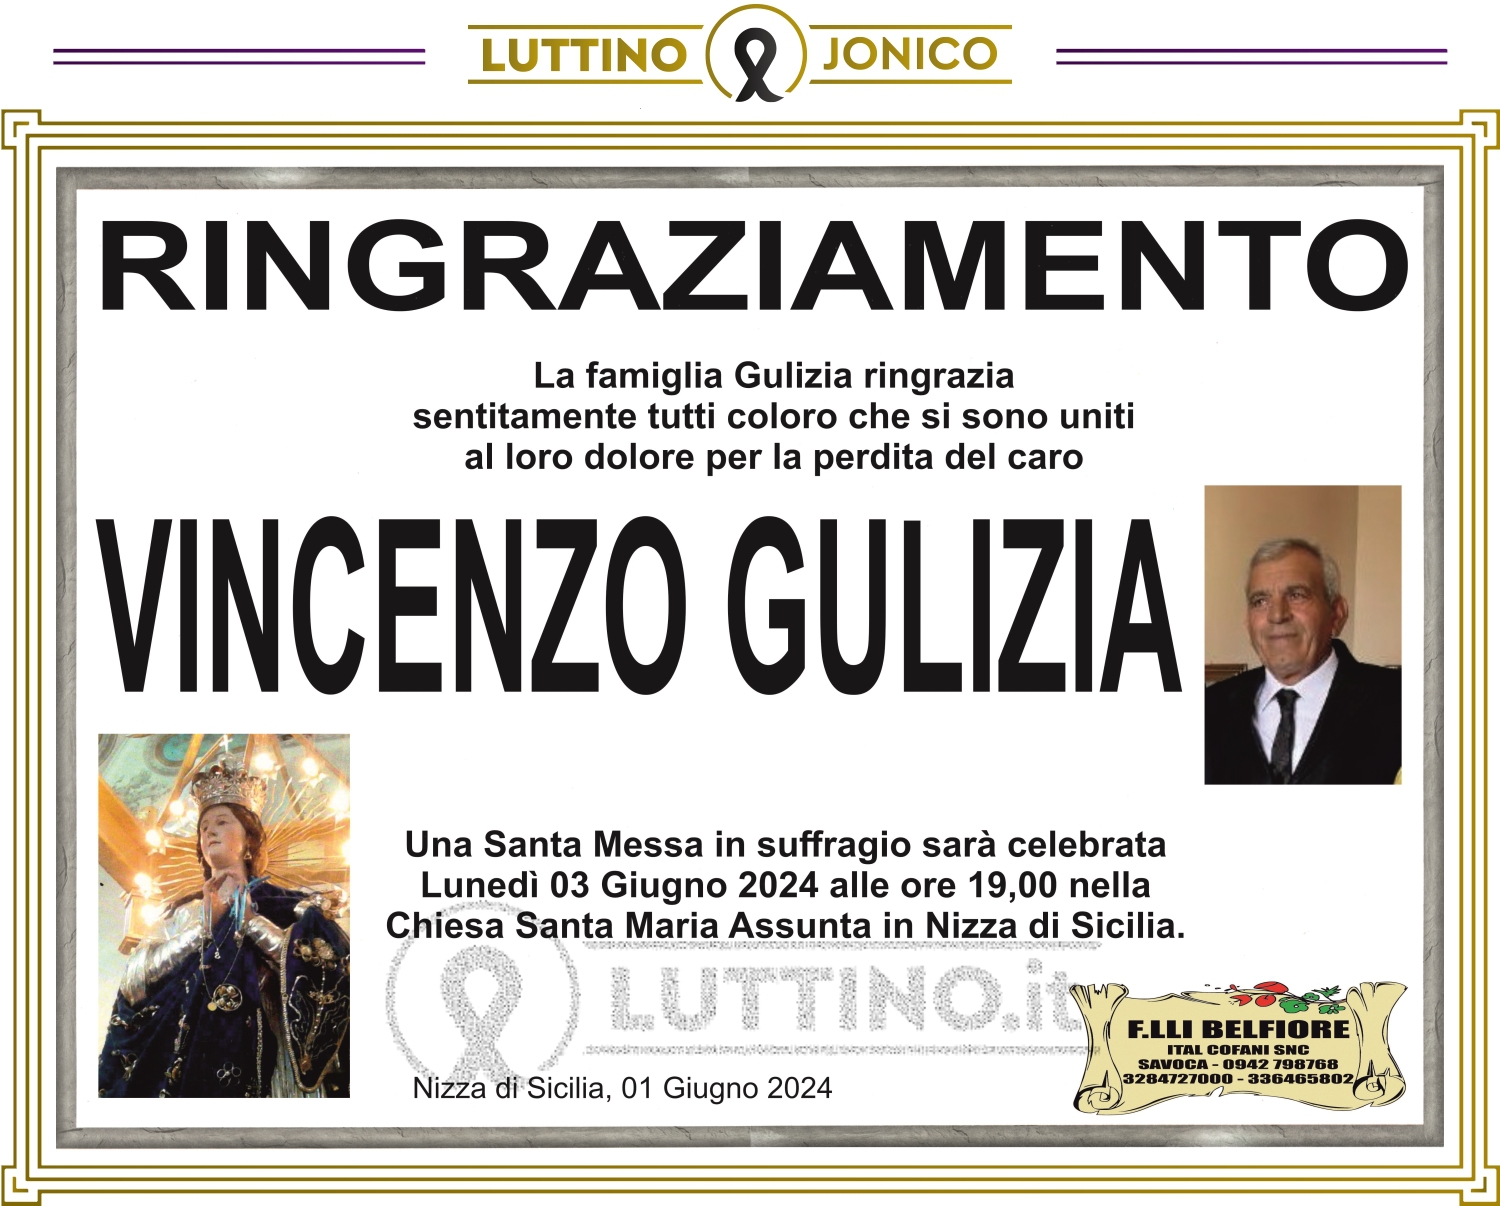 Vincenzo Gulizia